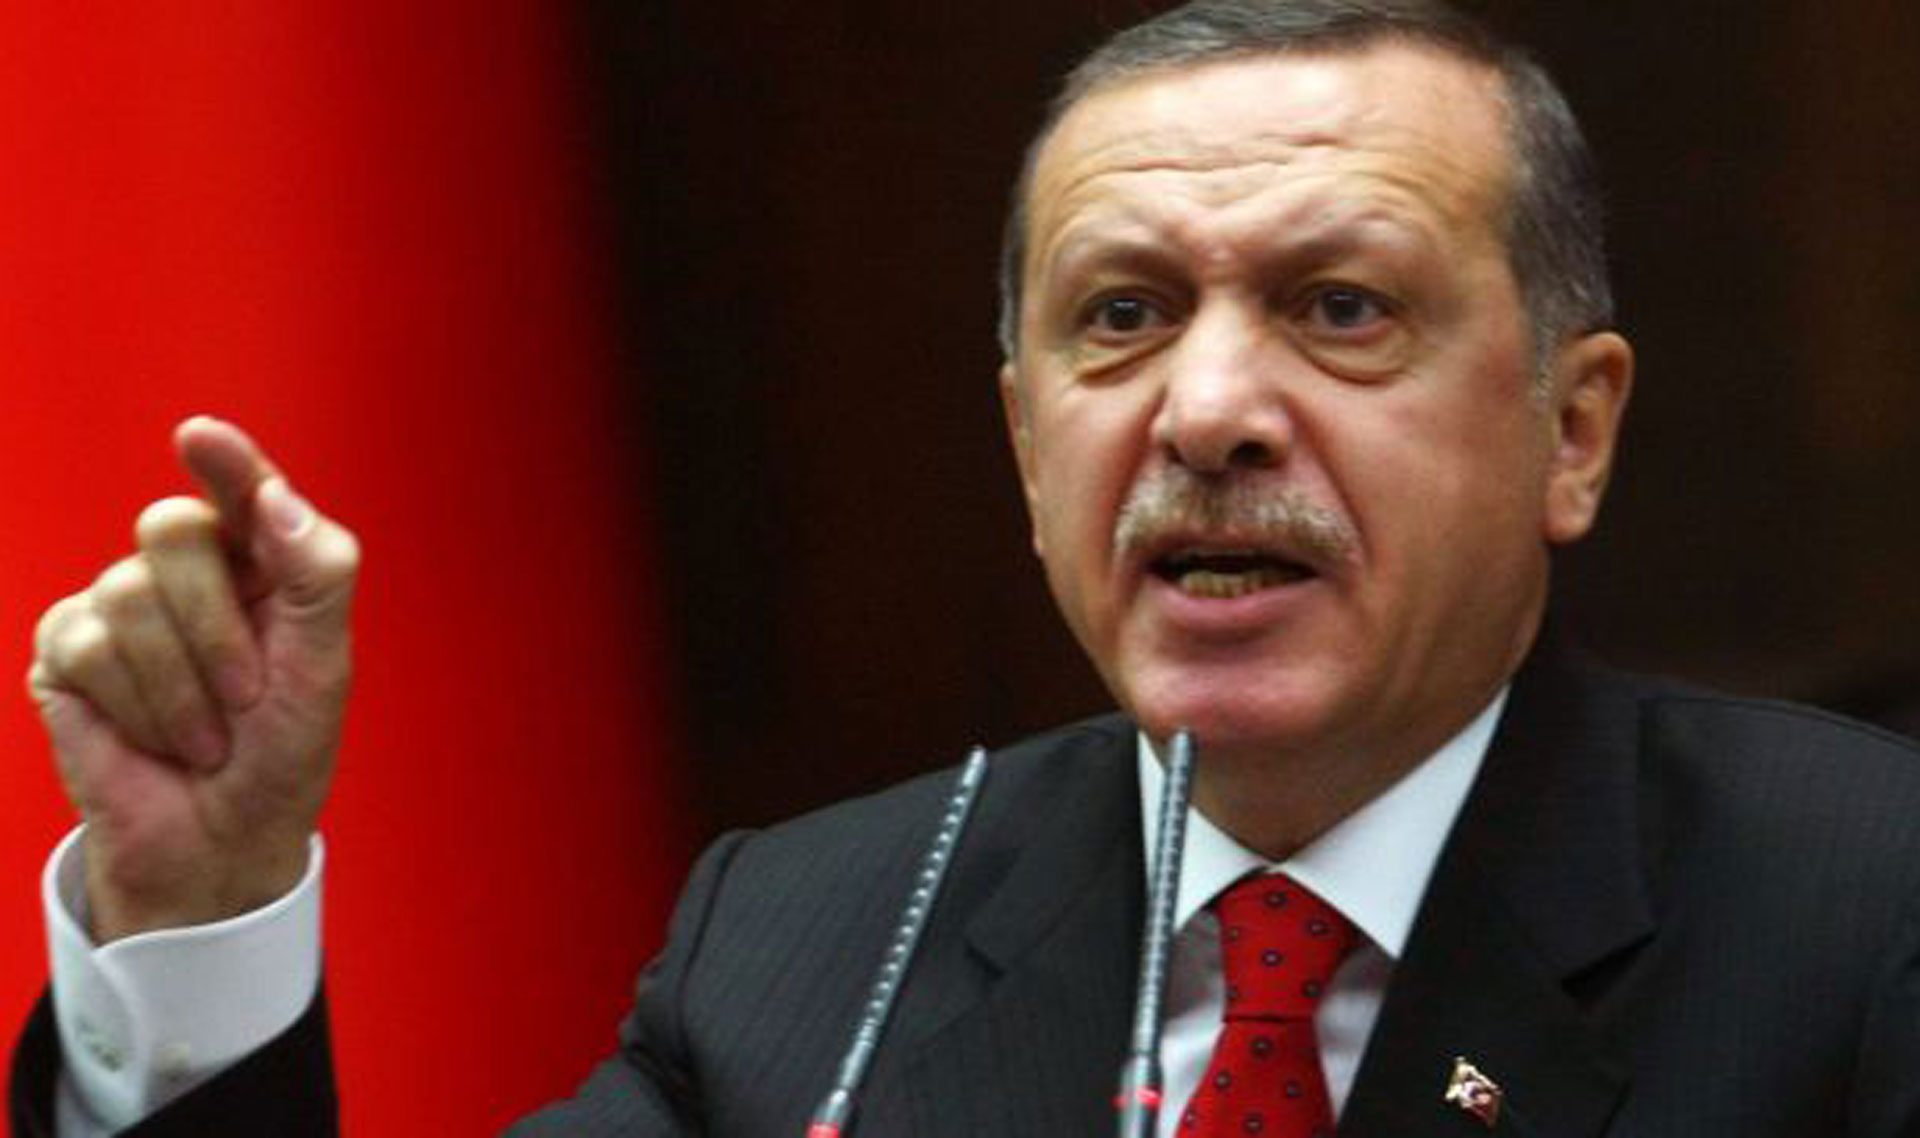 2 - Erdogan miniszterelnök, aki üdvözli a zsidókat és fenyegeti Izraelt